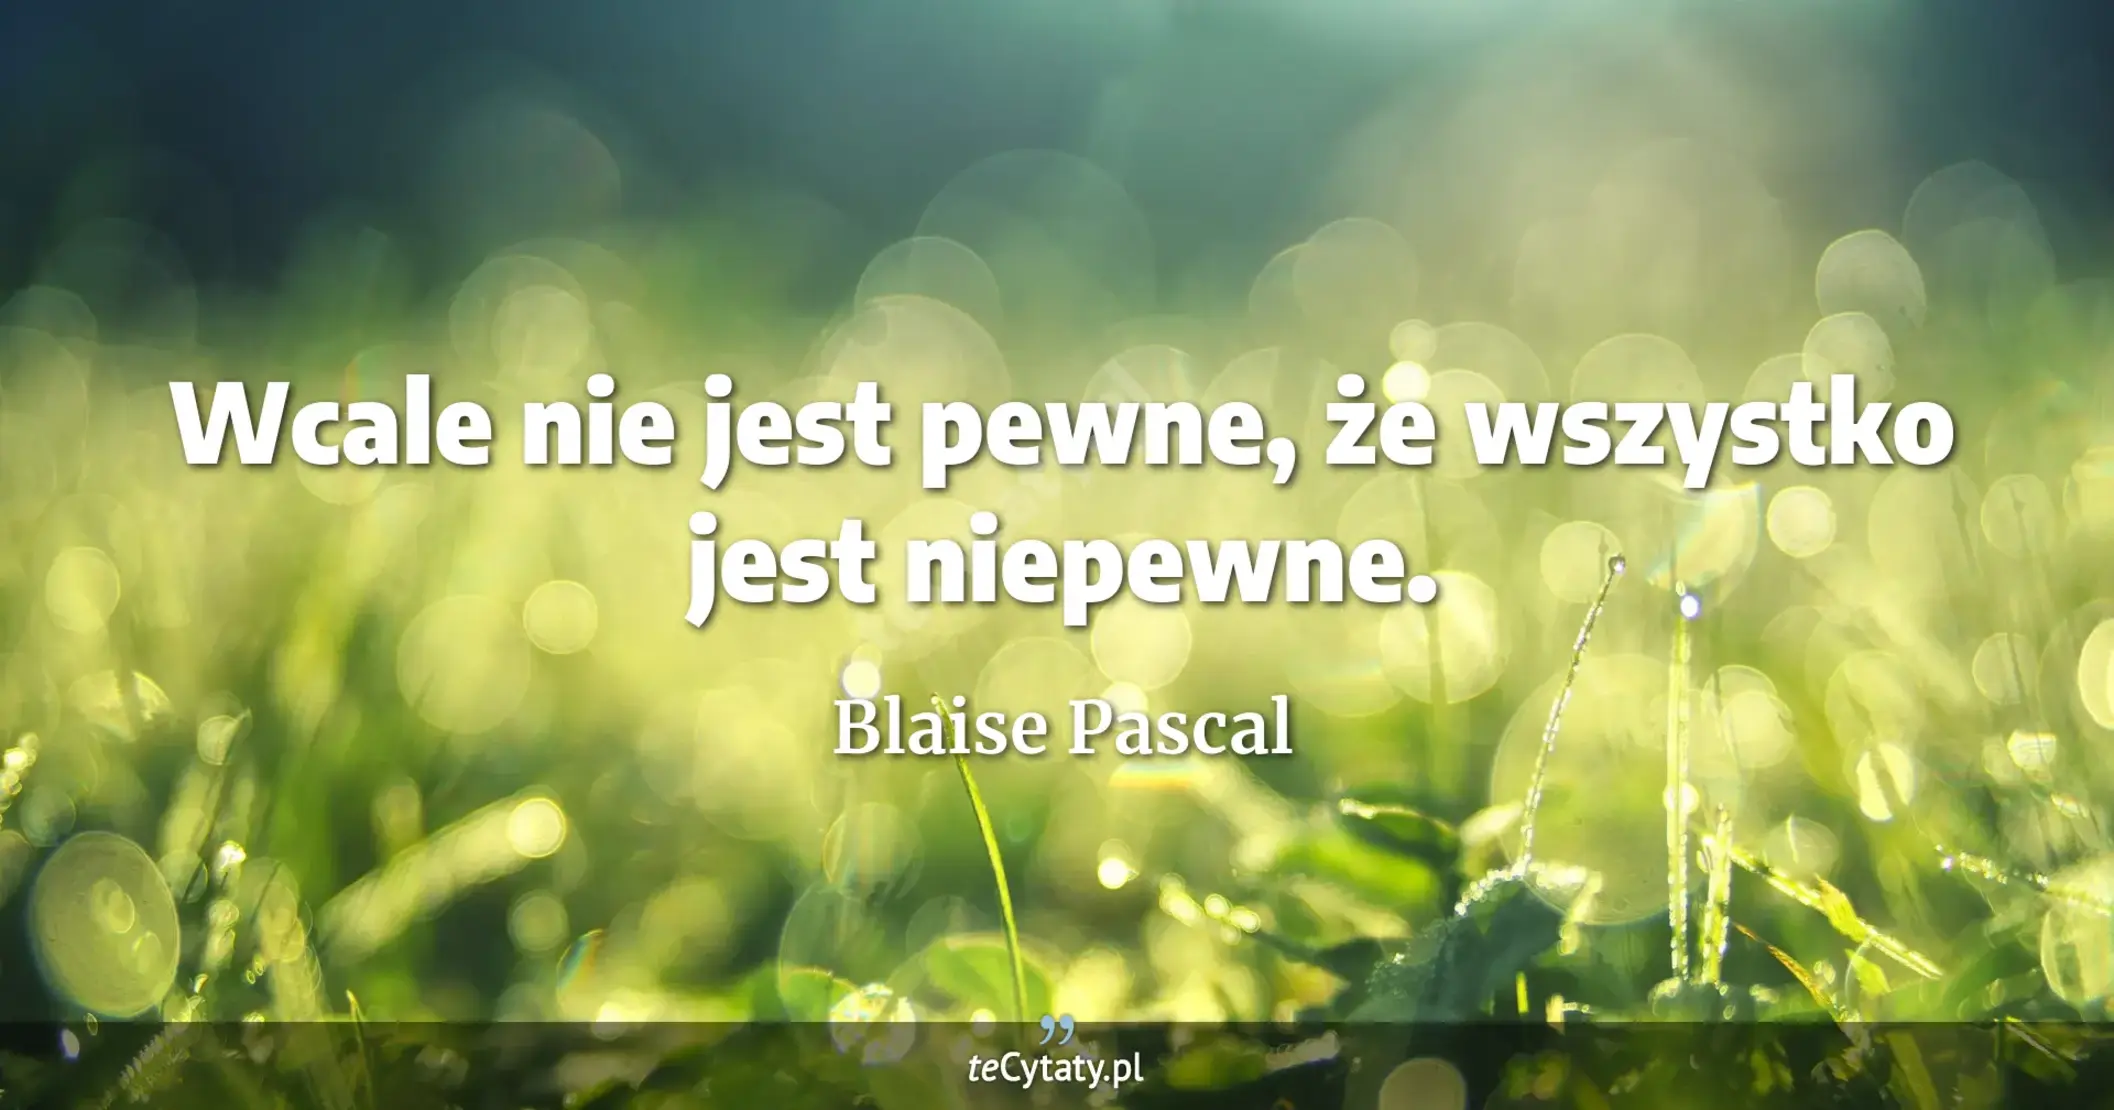 Wcale nie jest pewne, że wszystko jest niepewne. - Blaise Pascal